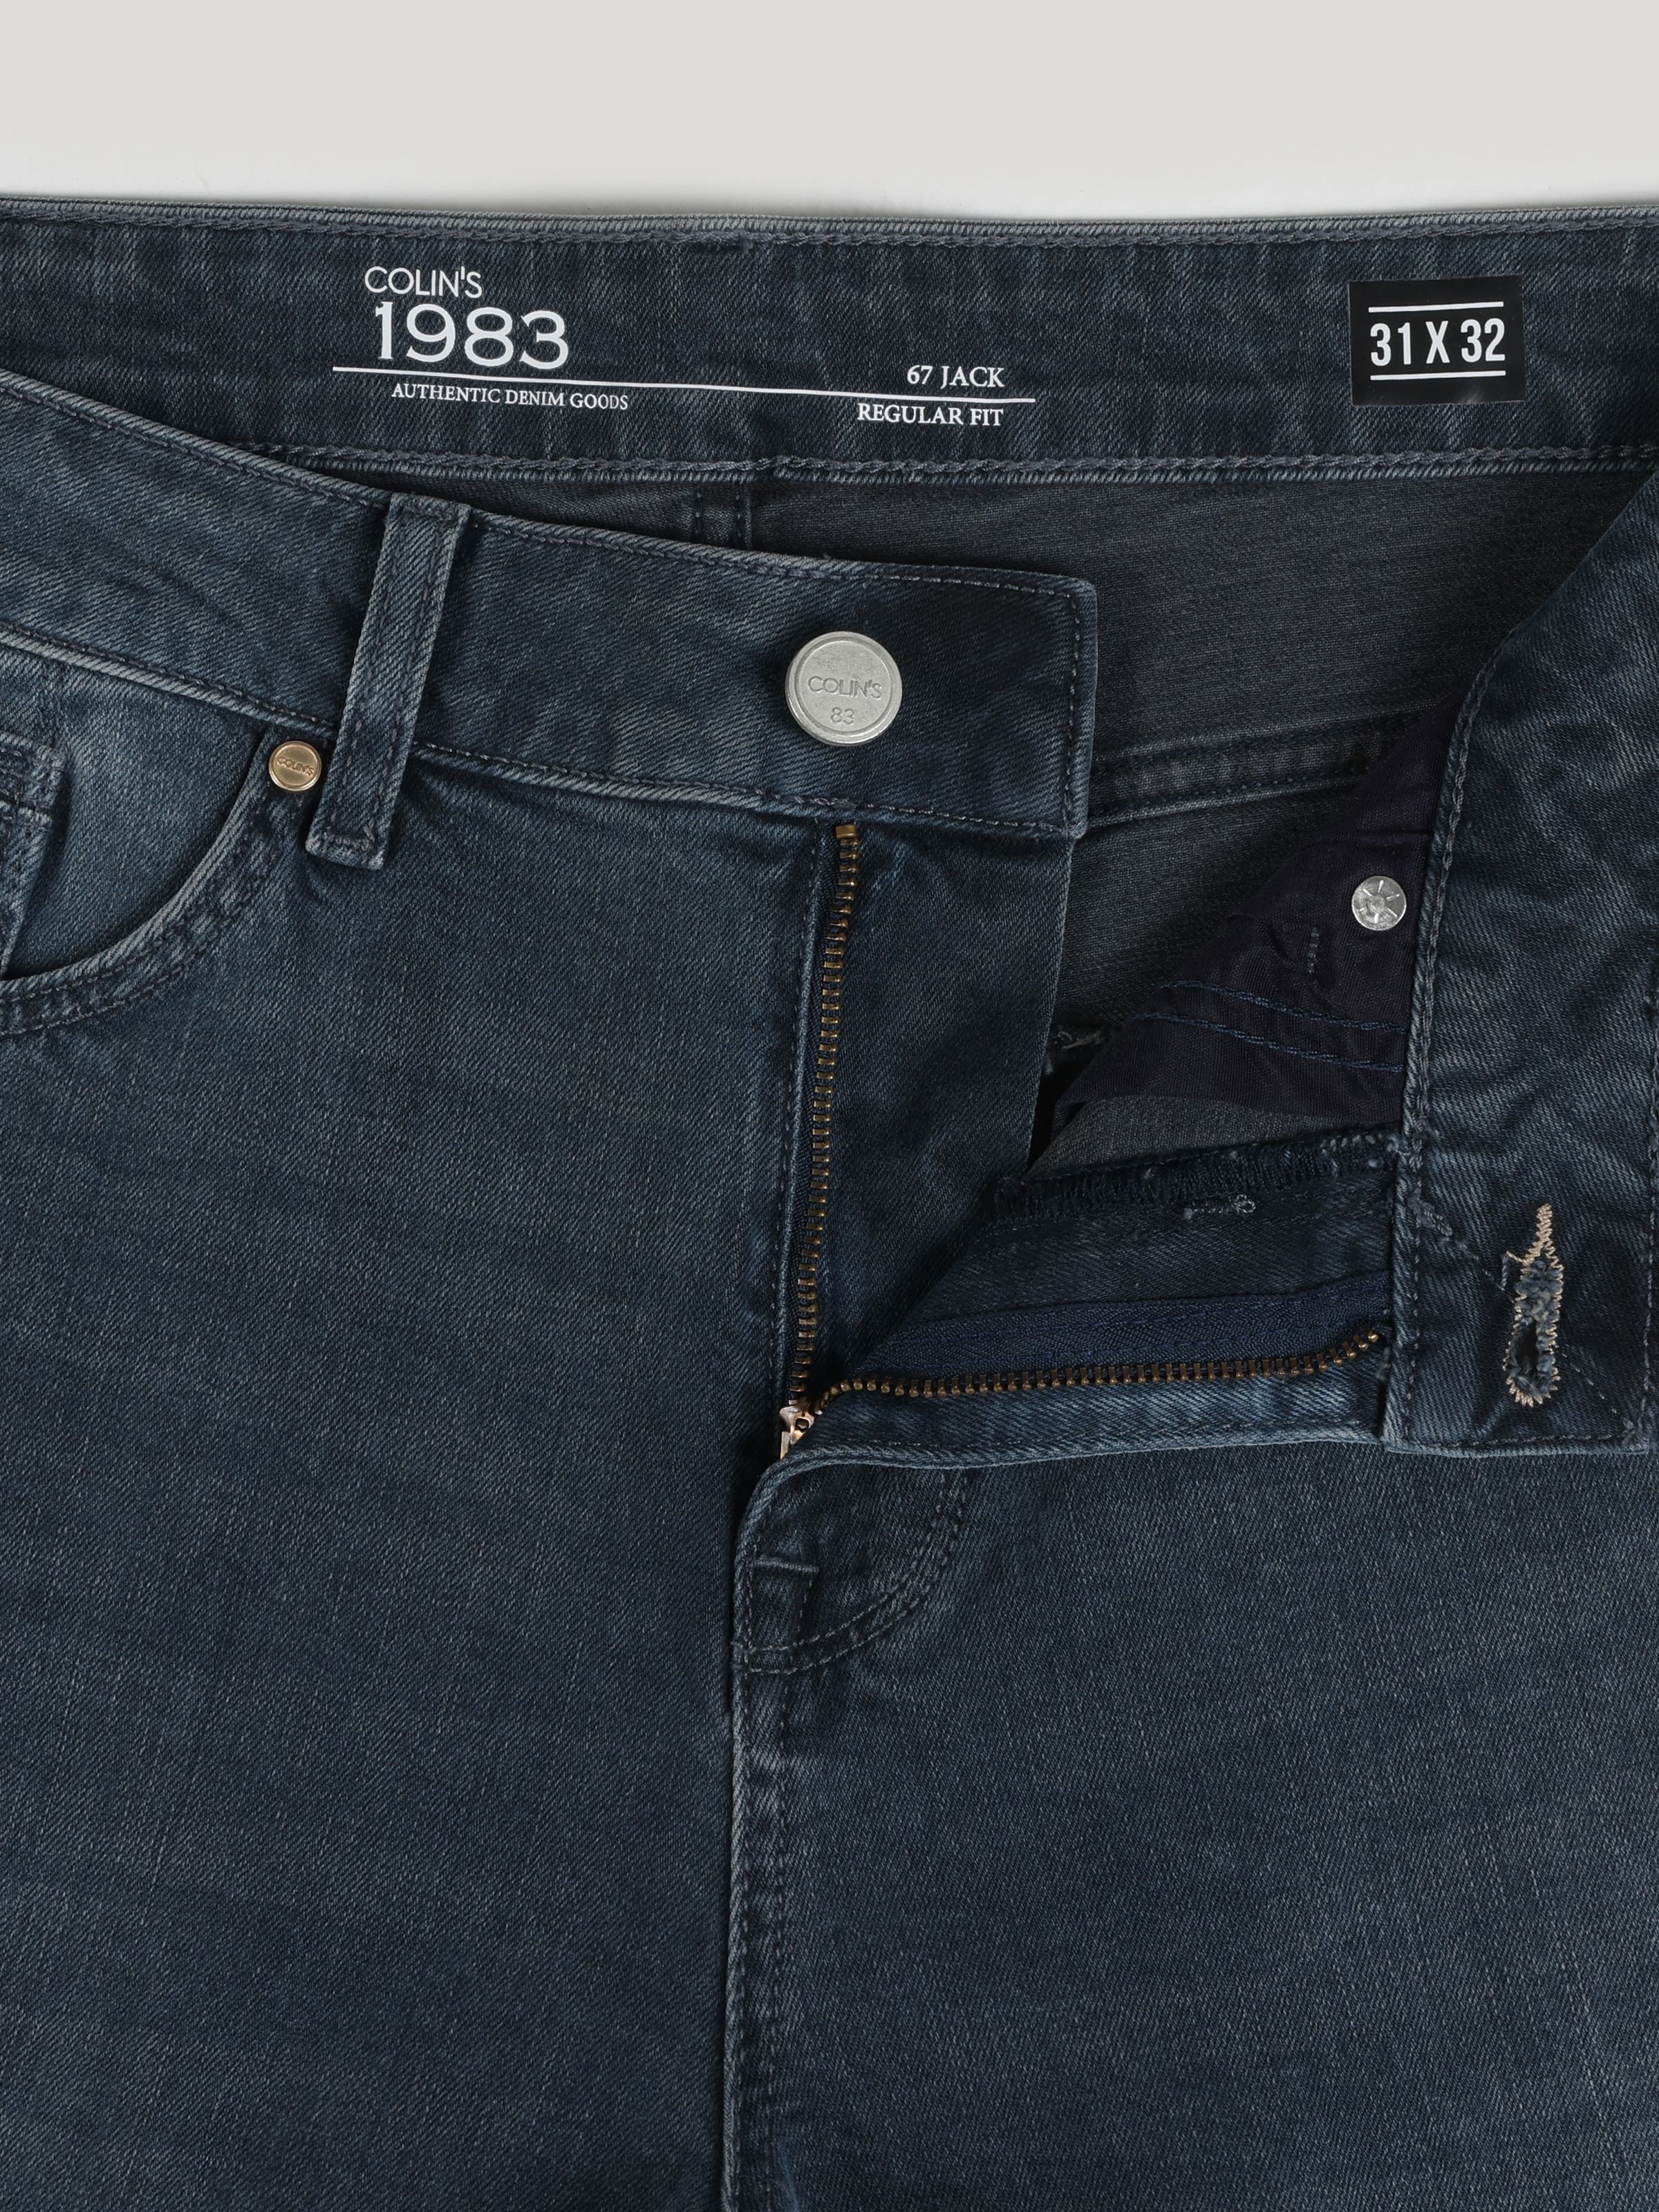 Afișați detalii pentru Pantaloni De Barbati Albastru inchis Regular Fit 067 JACK 